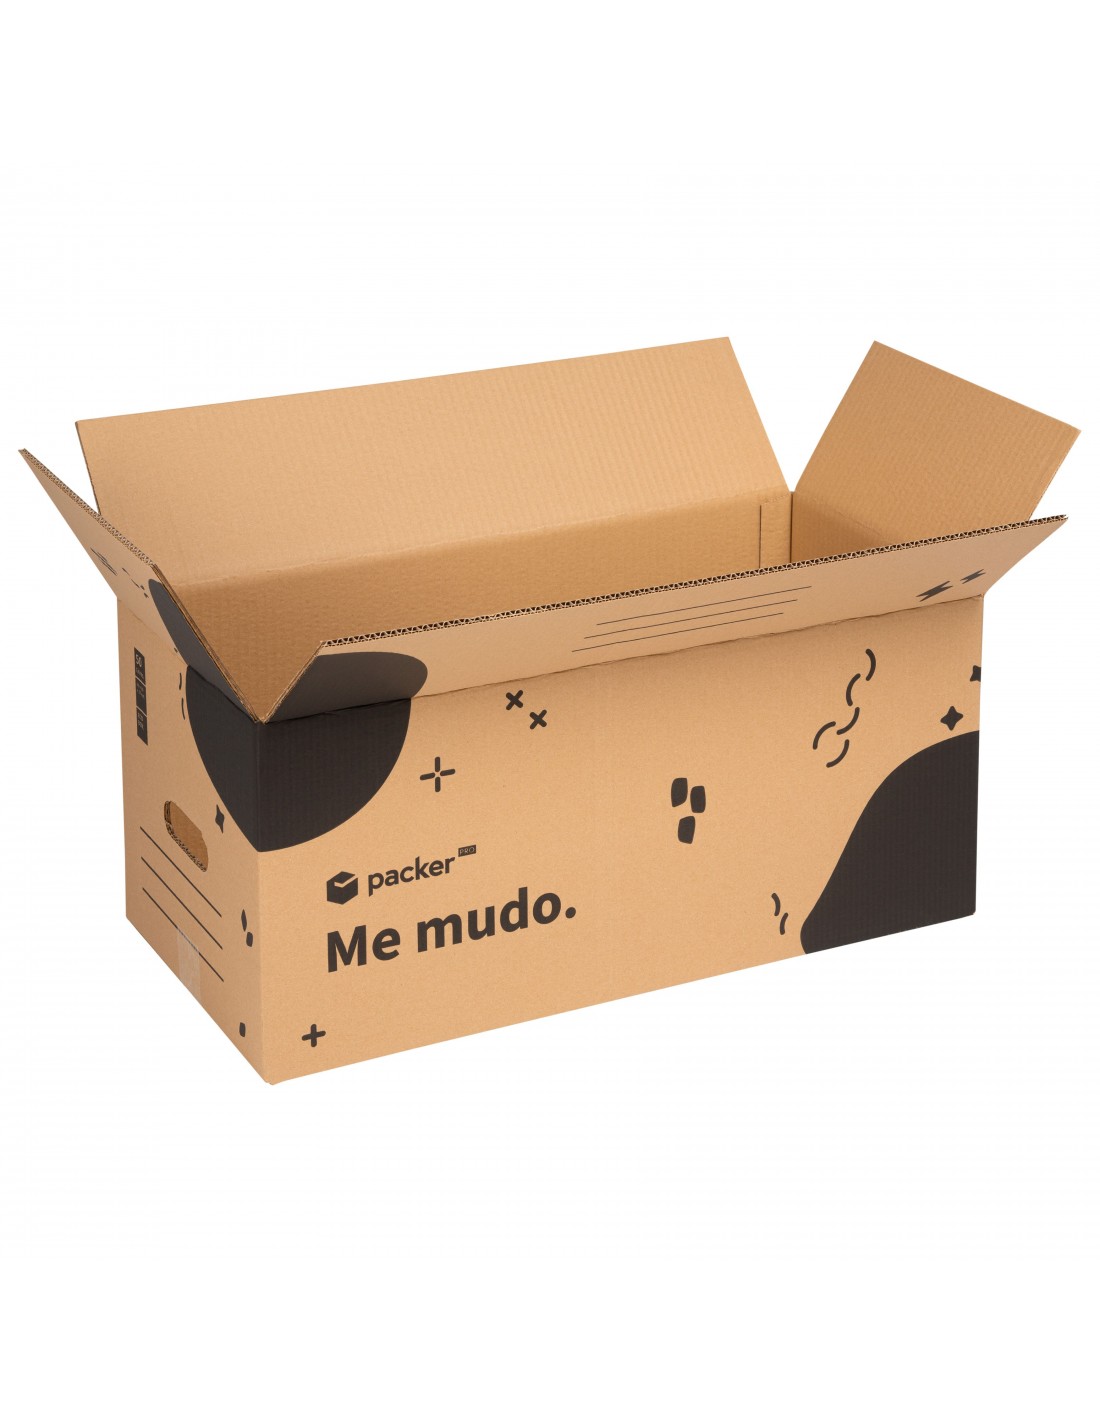 Packer PRO Cajas Carton para Mudanzas y Almacenaje Resistentes con Asas Rojas 43x30x25cm